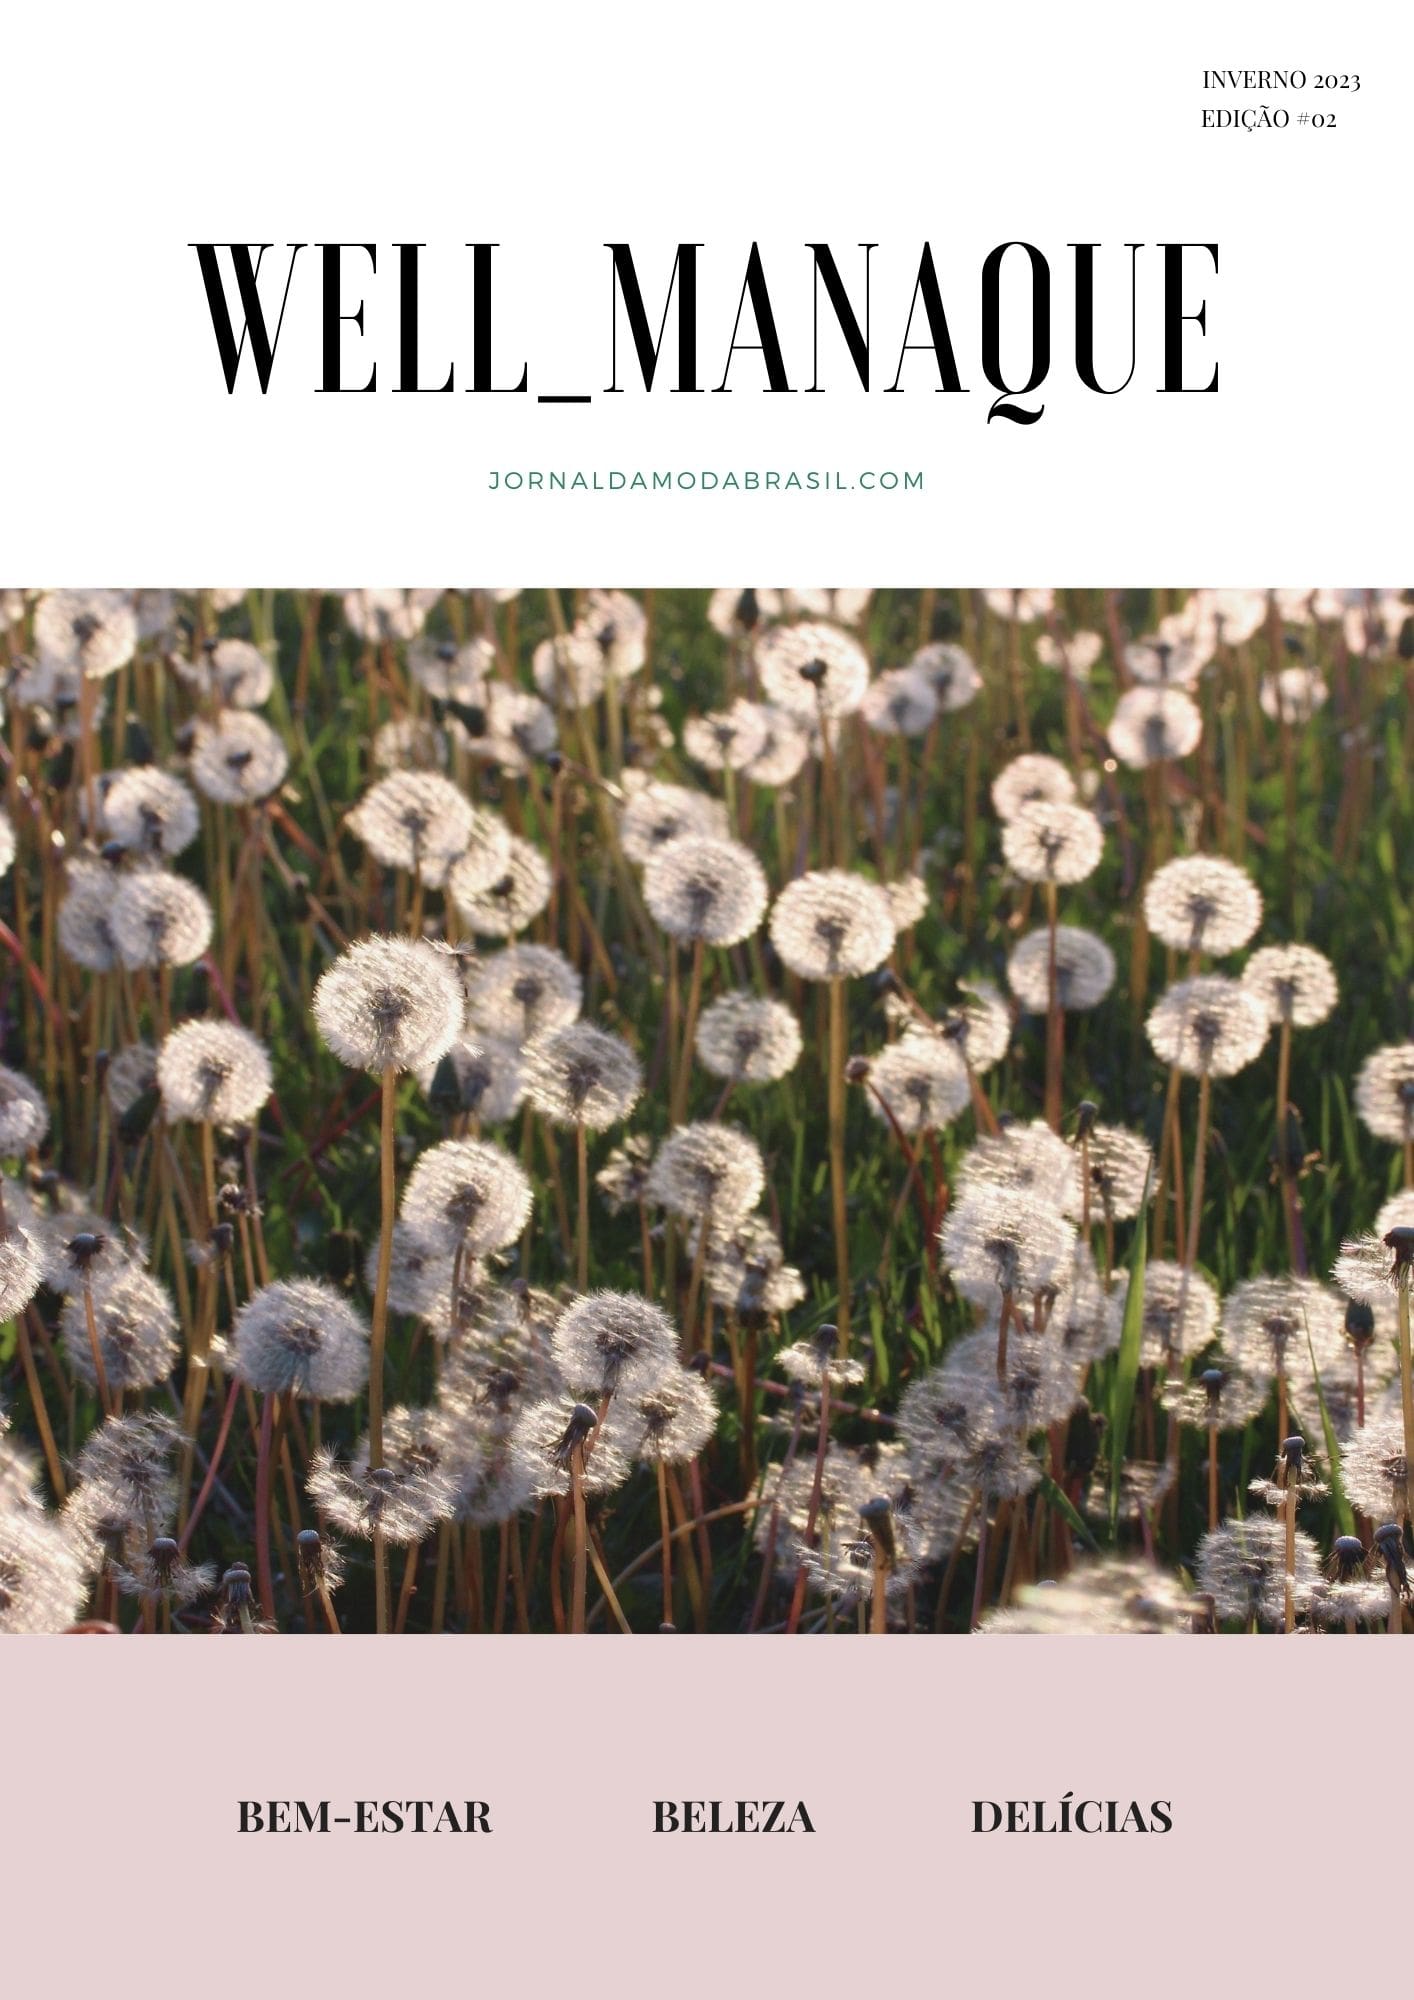 well_manaque edição de inverno 2023 - revista grátis e online sobre moda, beleza, lifestyle, cultura, turismo